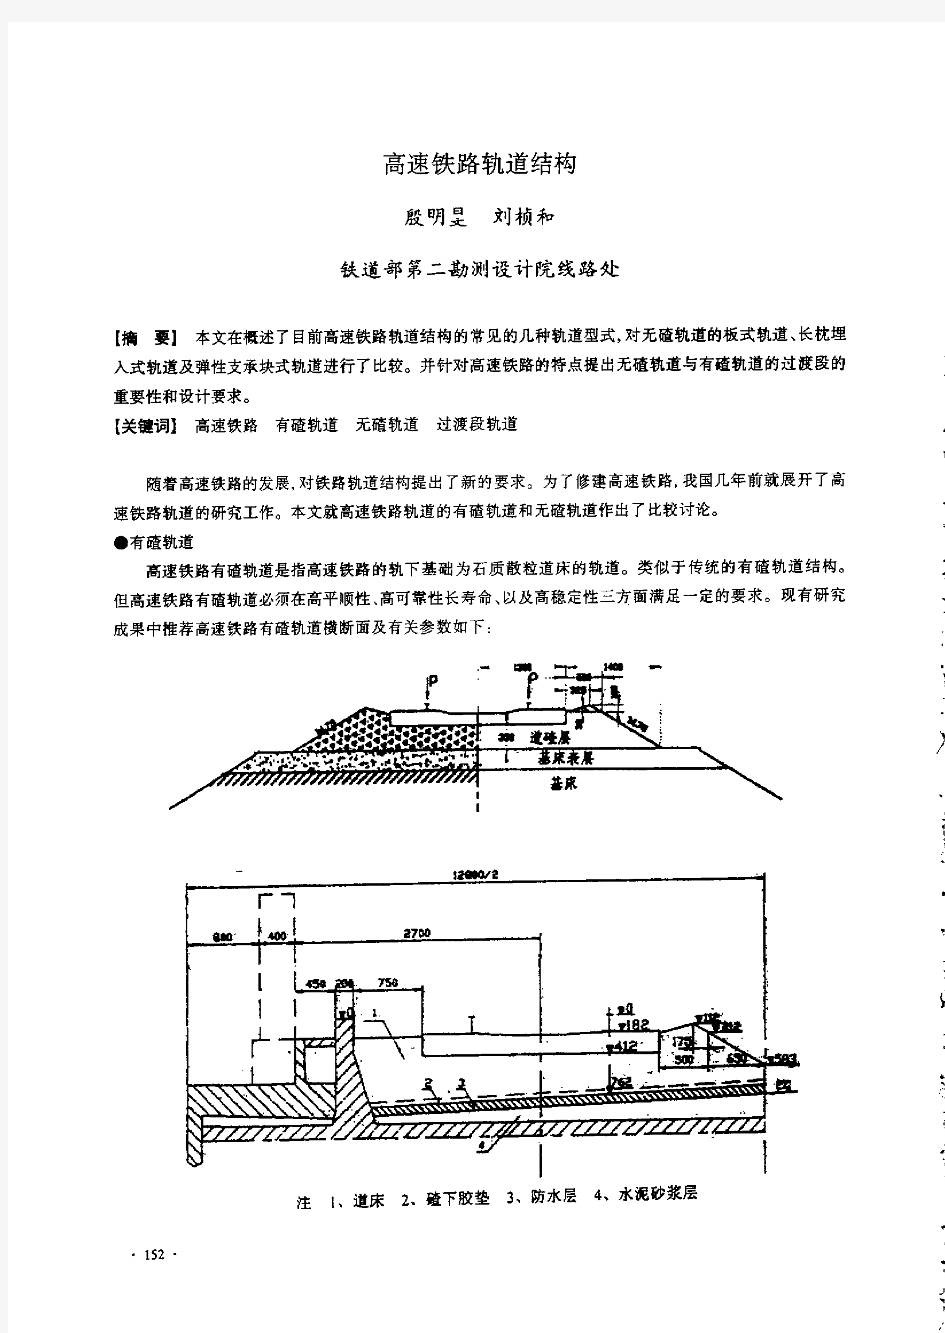 高速铁路轨道结构(1)